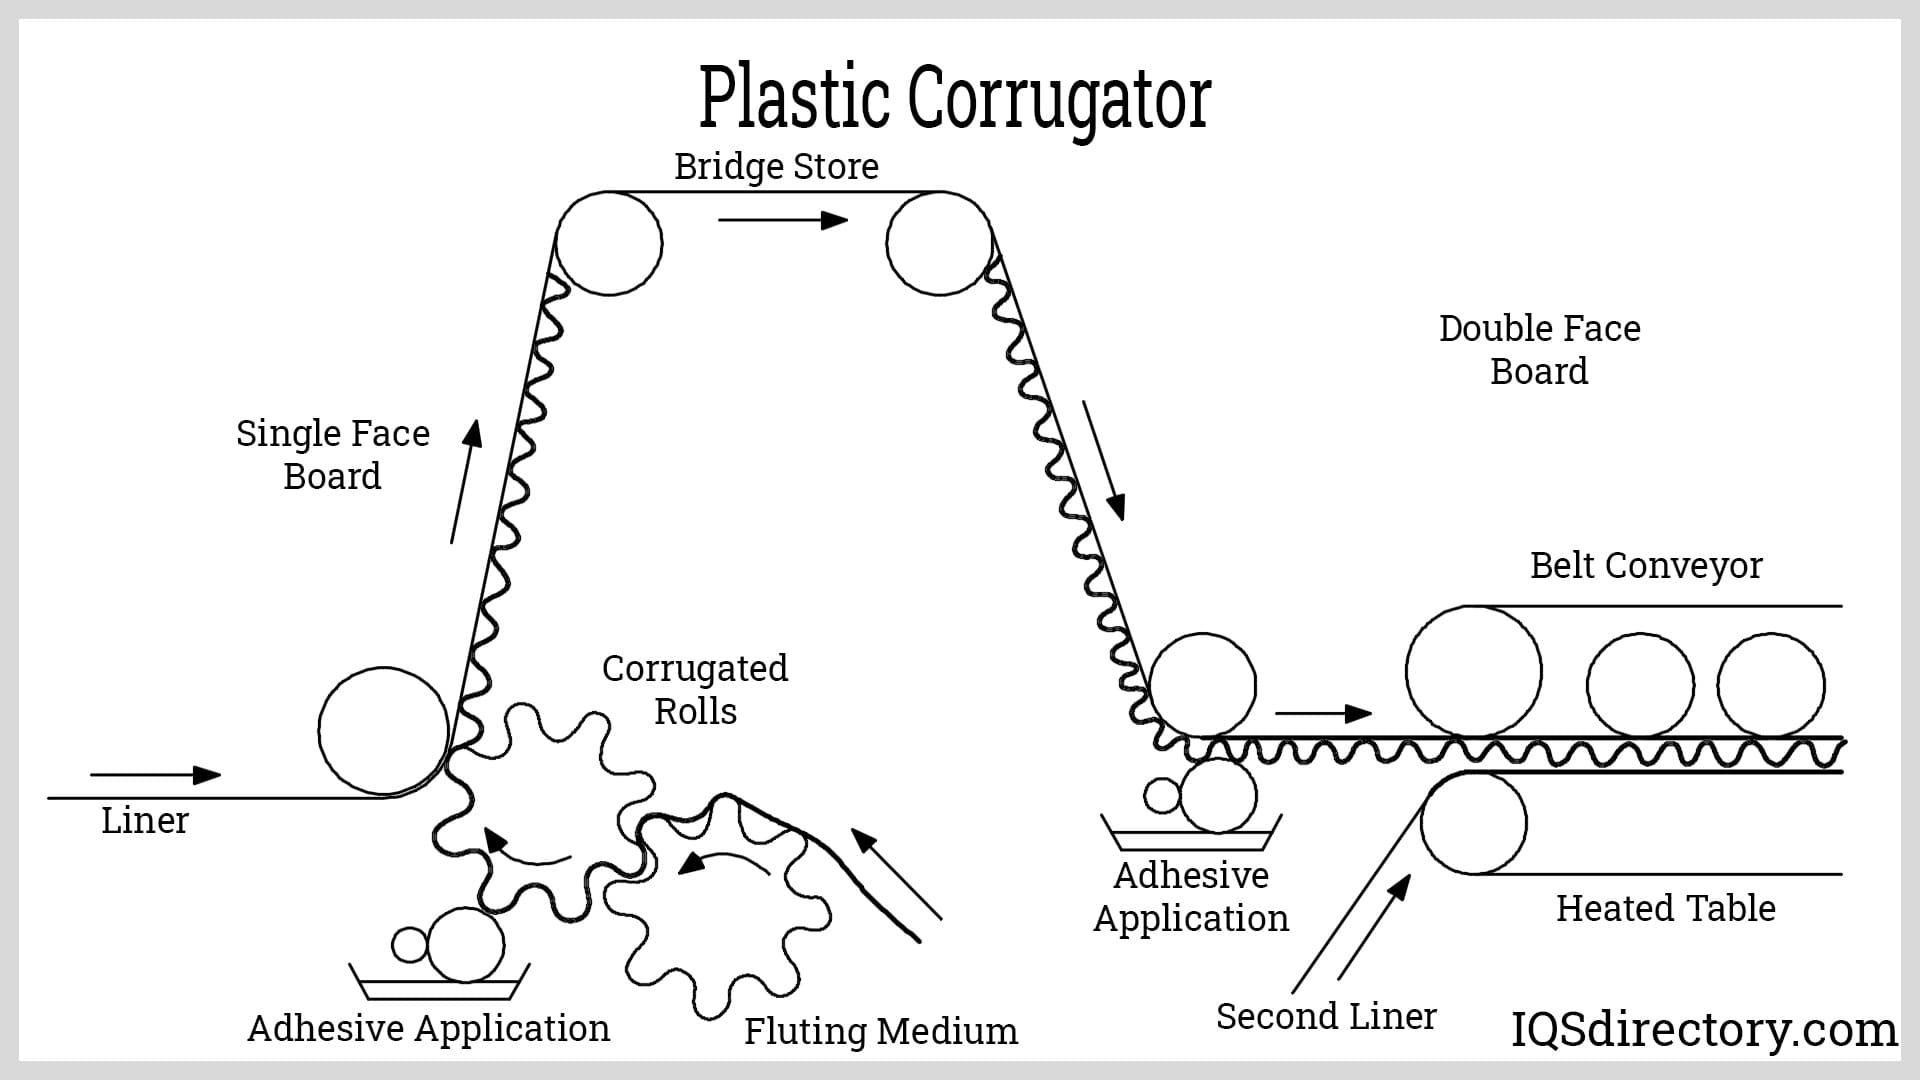 Plastic Corrugator